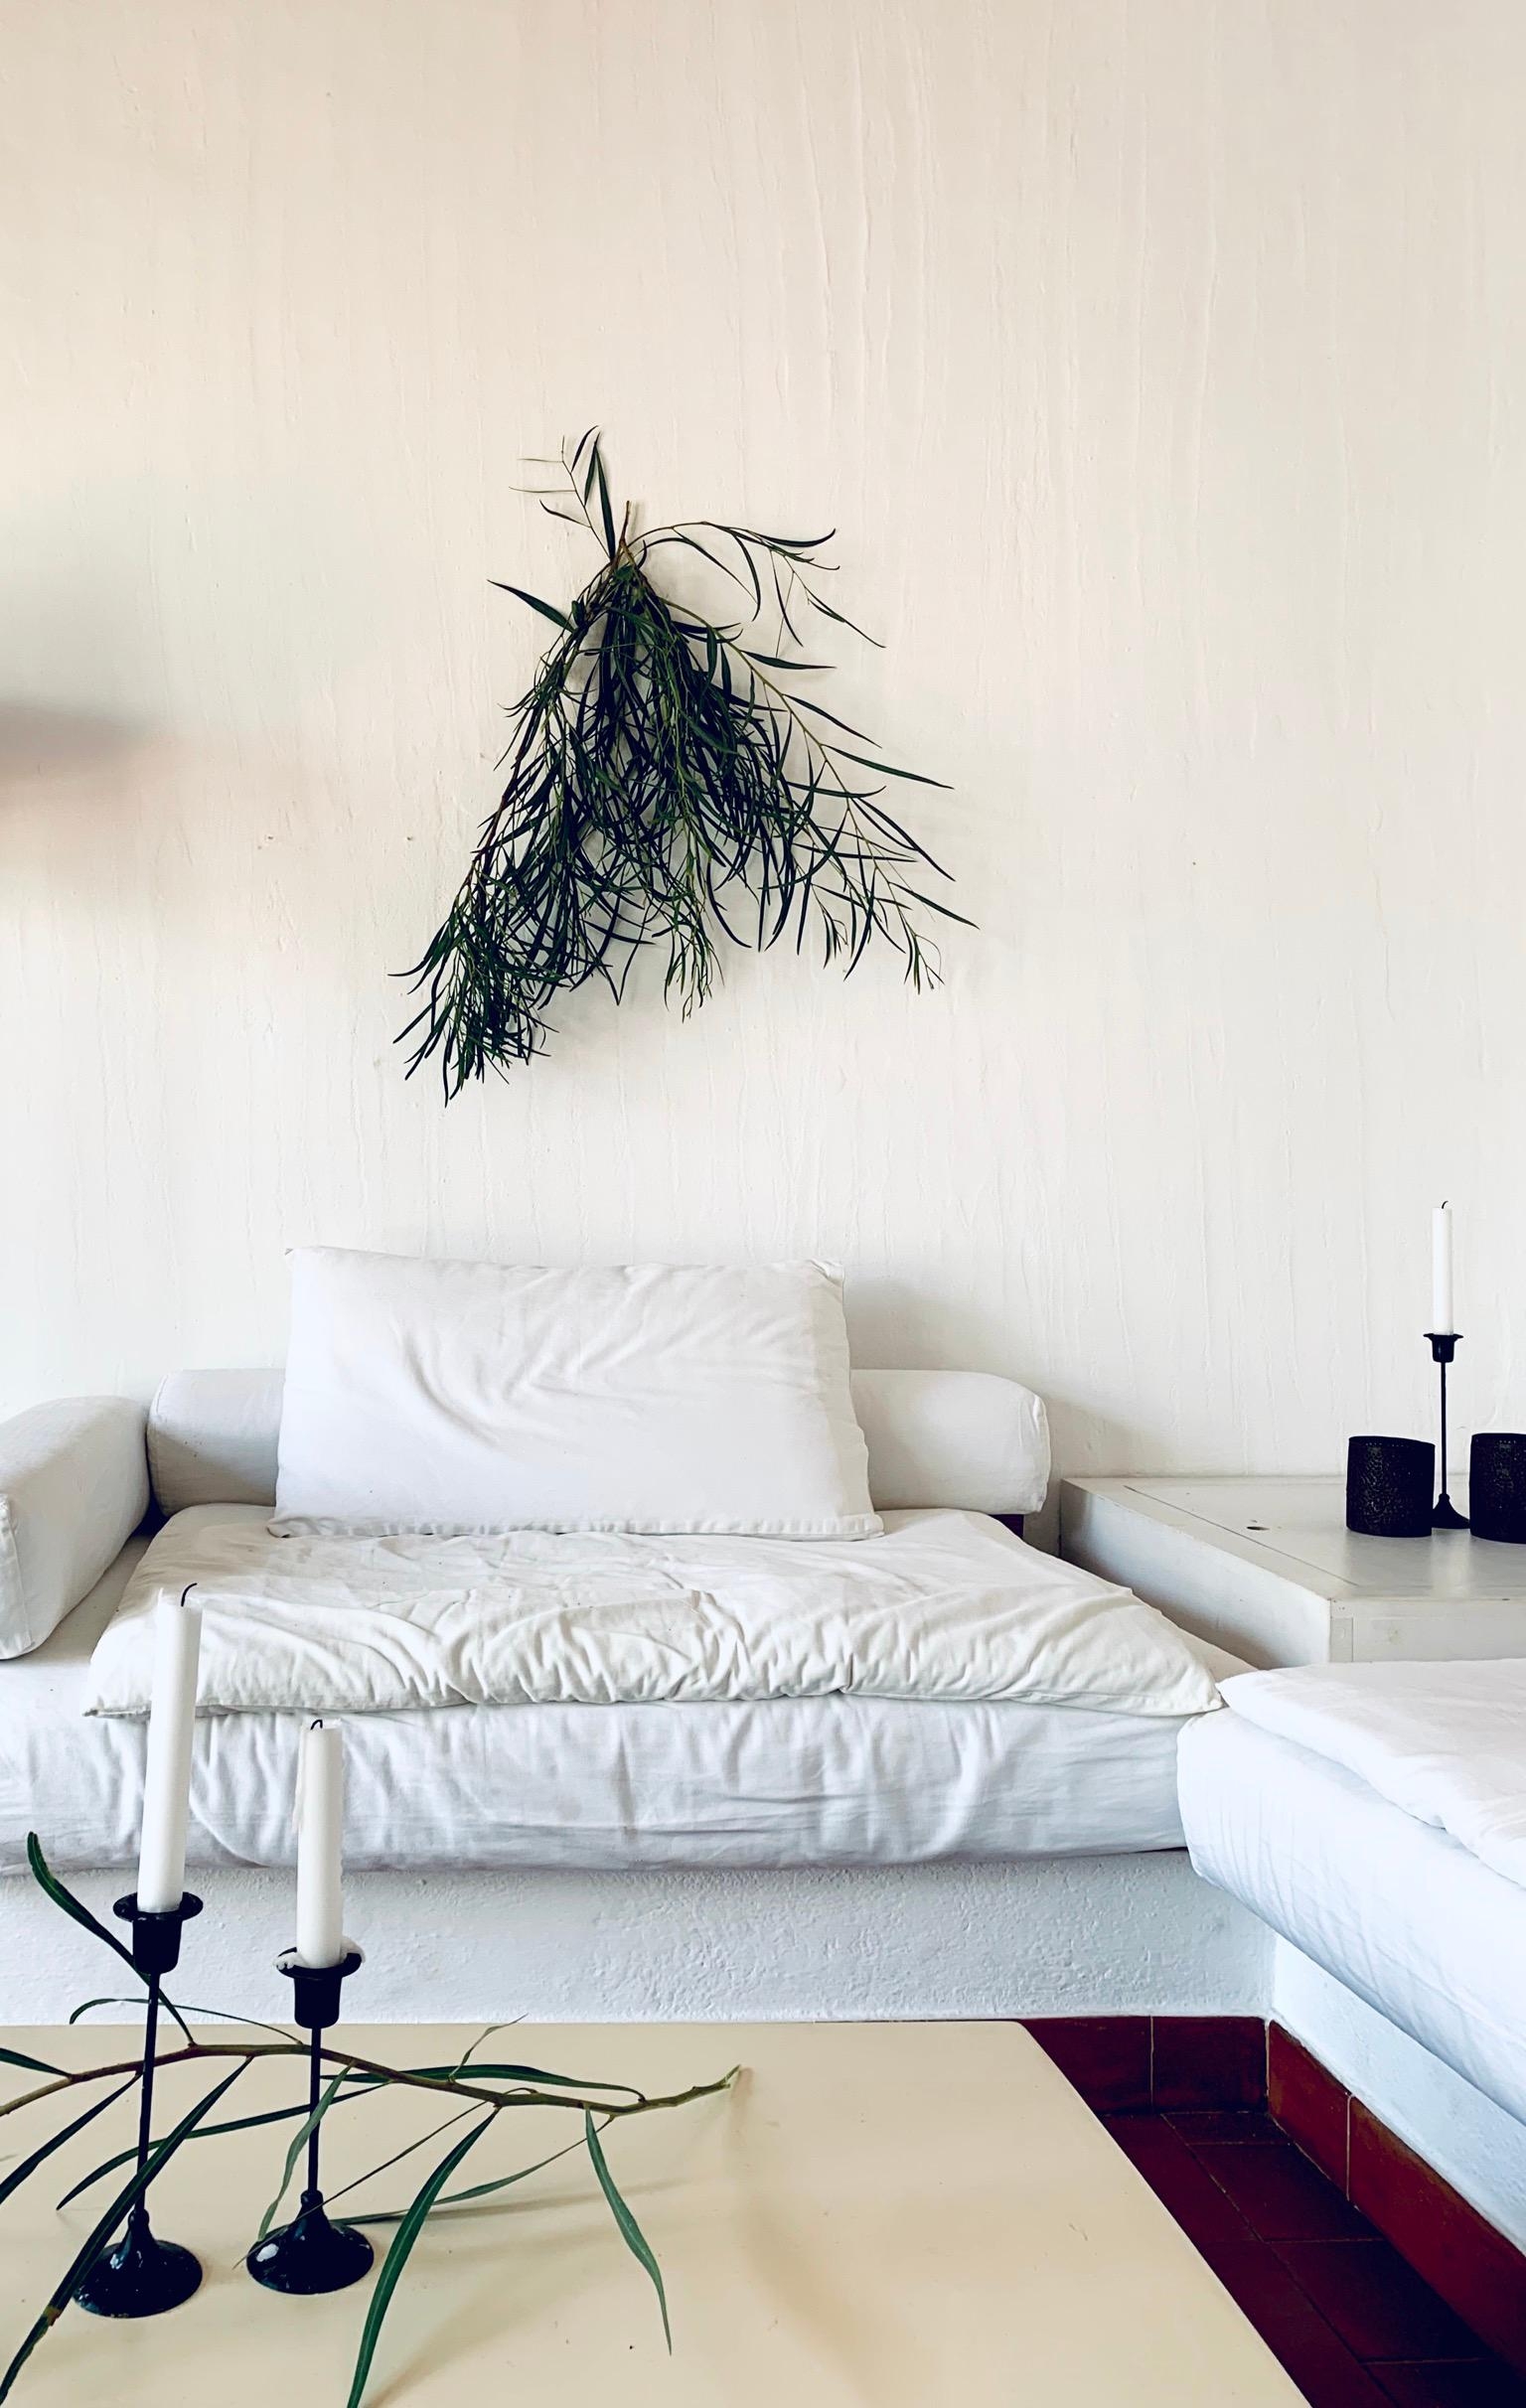 Lieben Gruß aus Sardinien. ❤️ #wohnzimmer #interior #mymood #couchliebt #couchstyle 
#mystyle